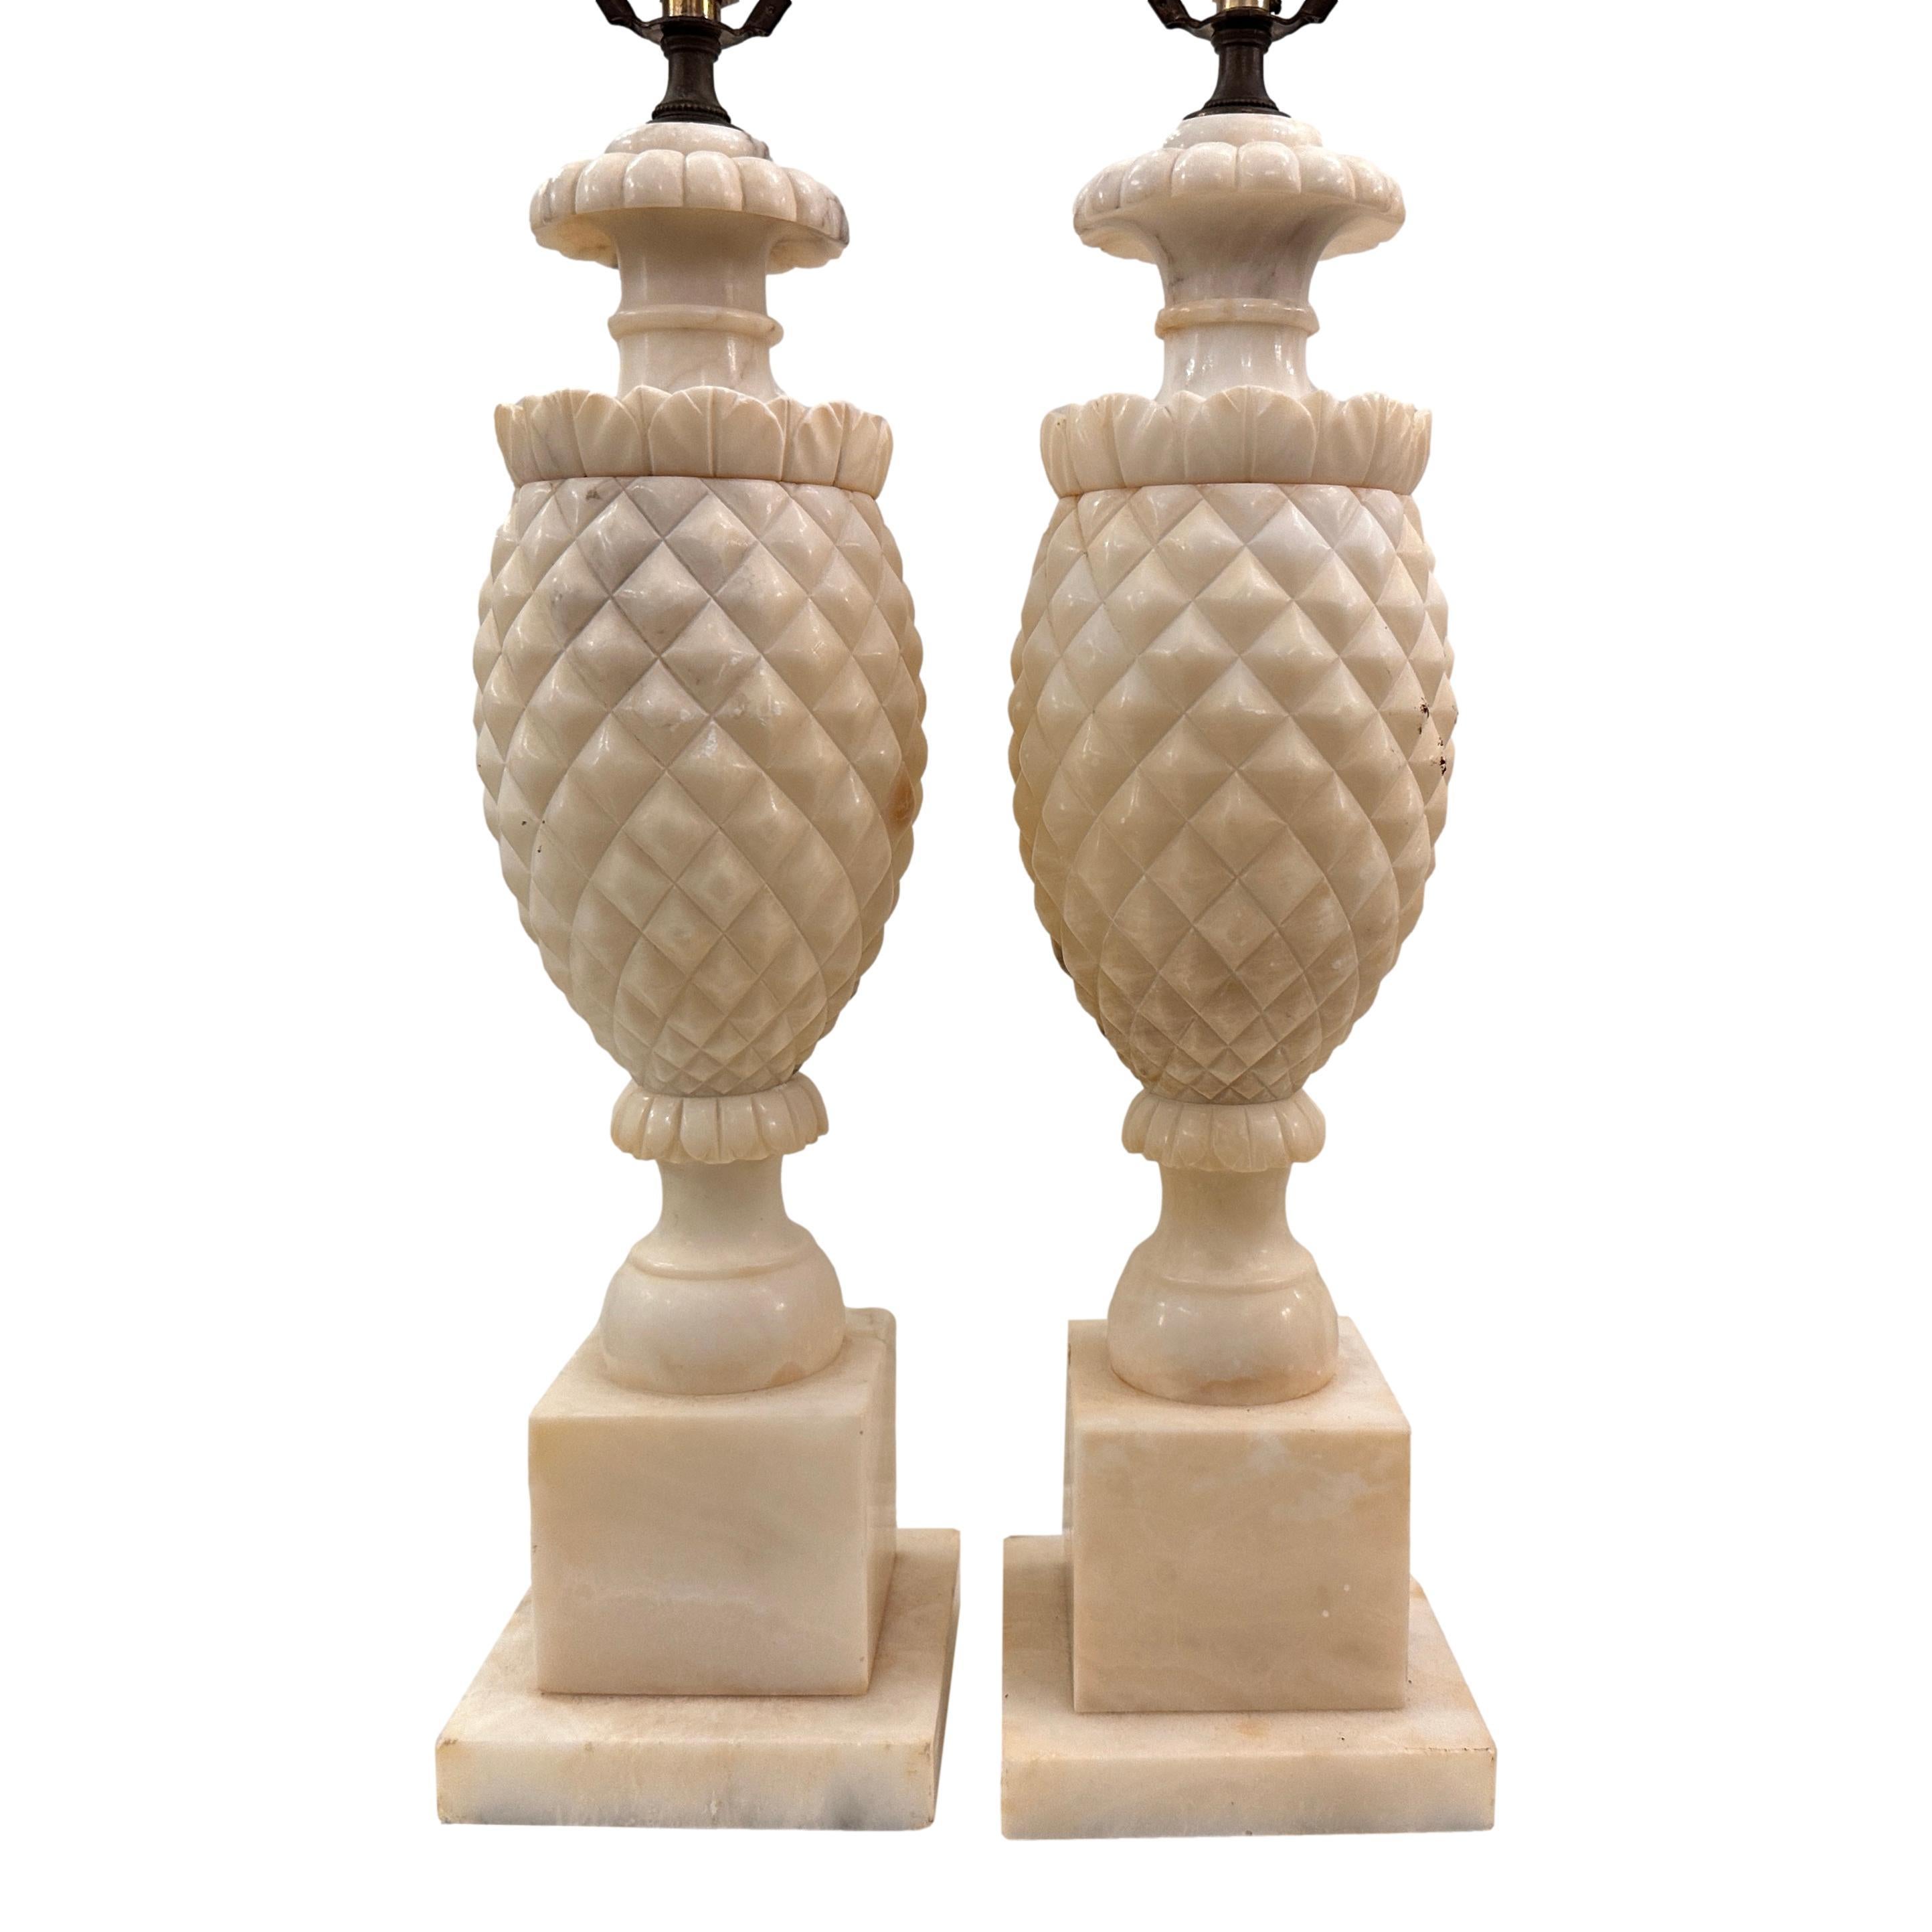 Paire de lampes italiennes en albâtre sculpté datant des années 1950.

Mesures :
Hauteur du corps : 18